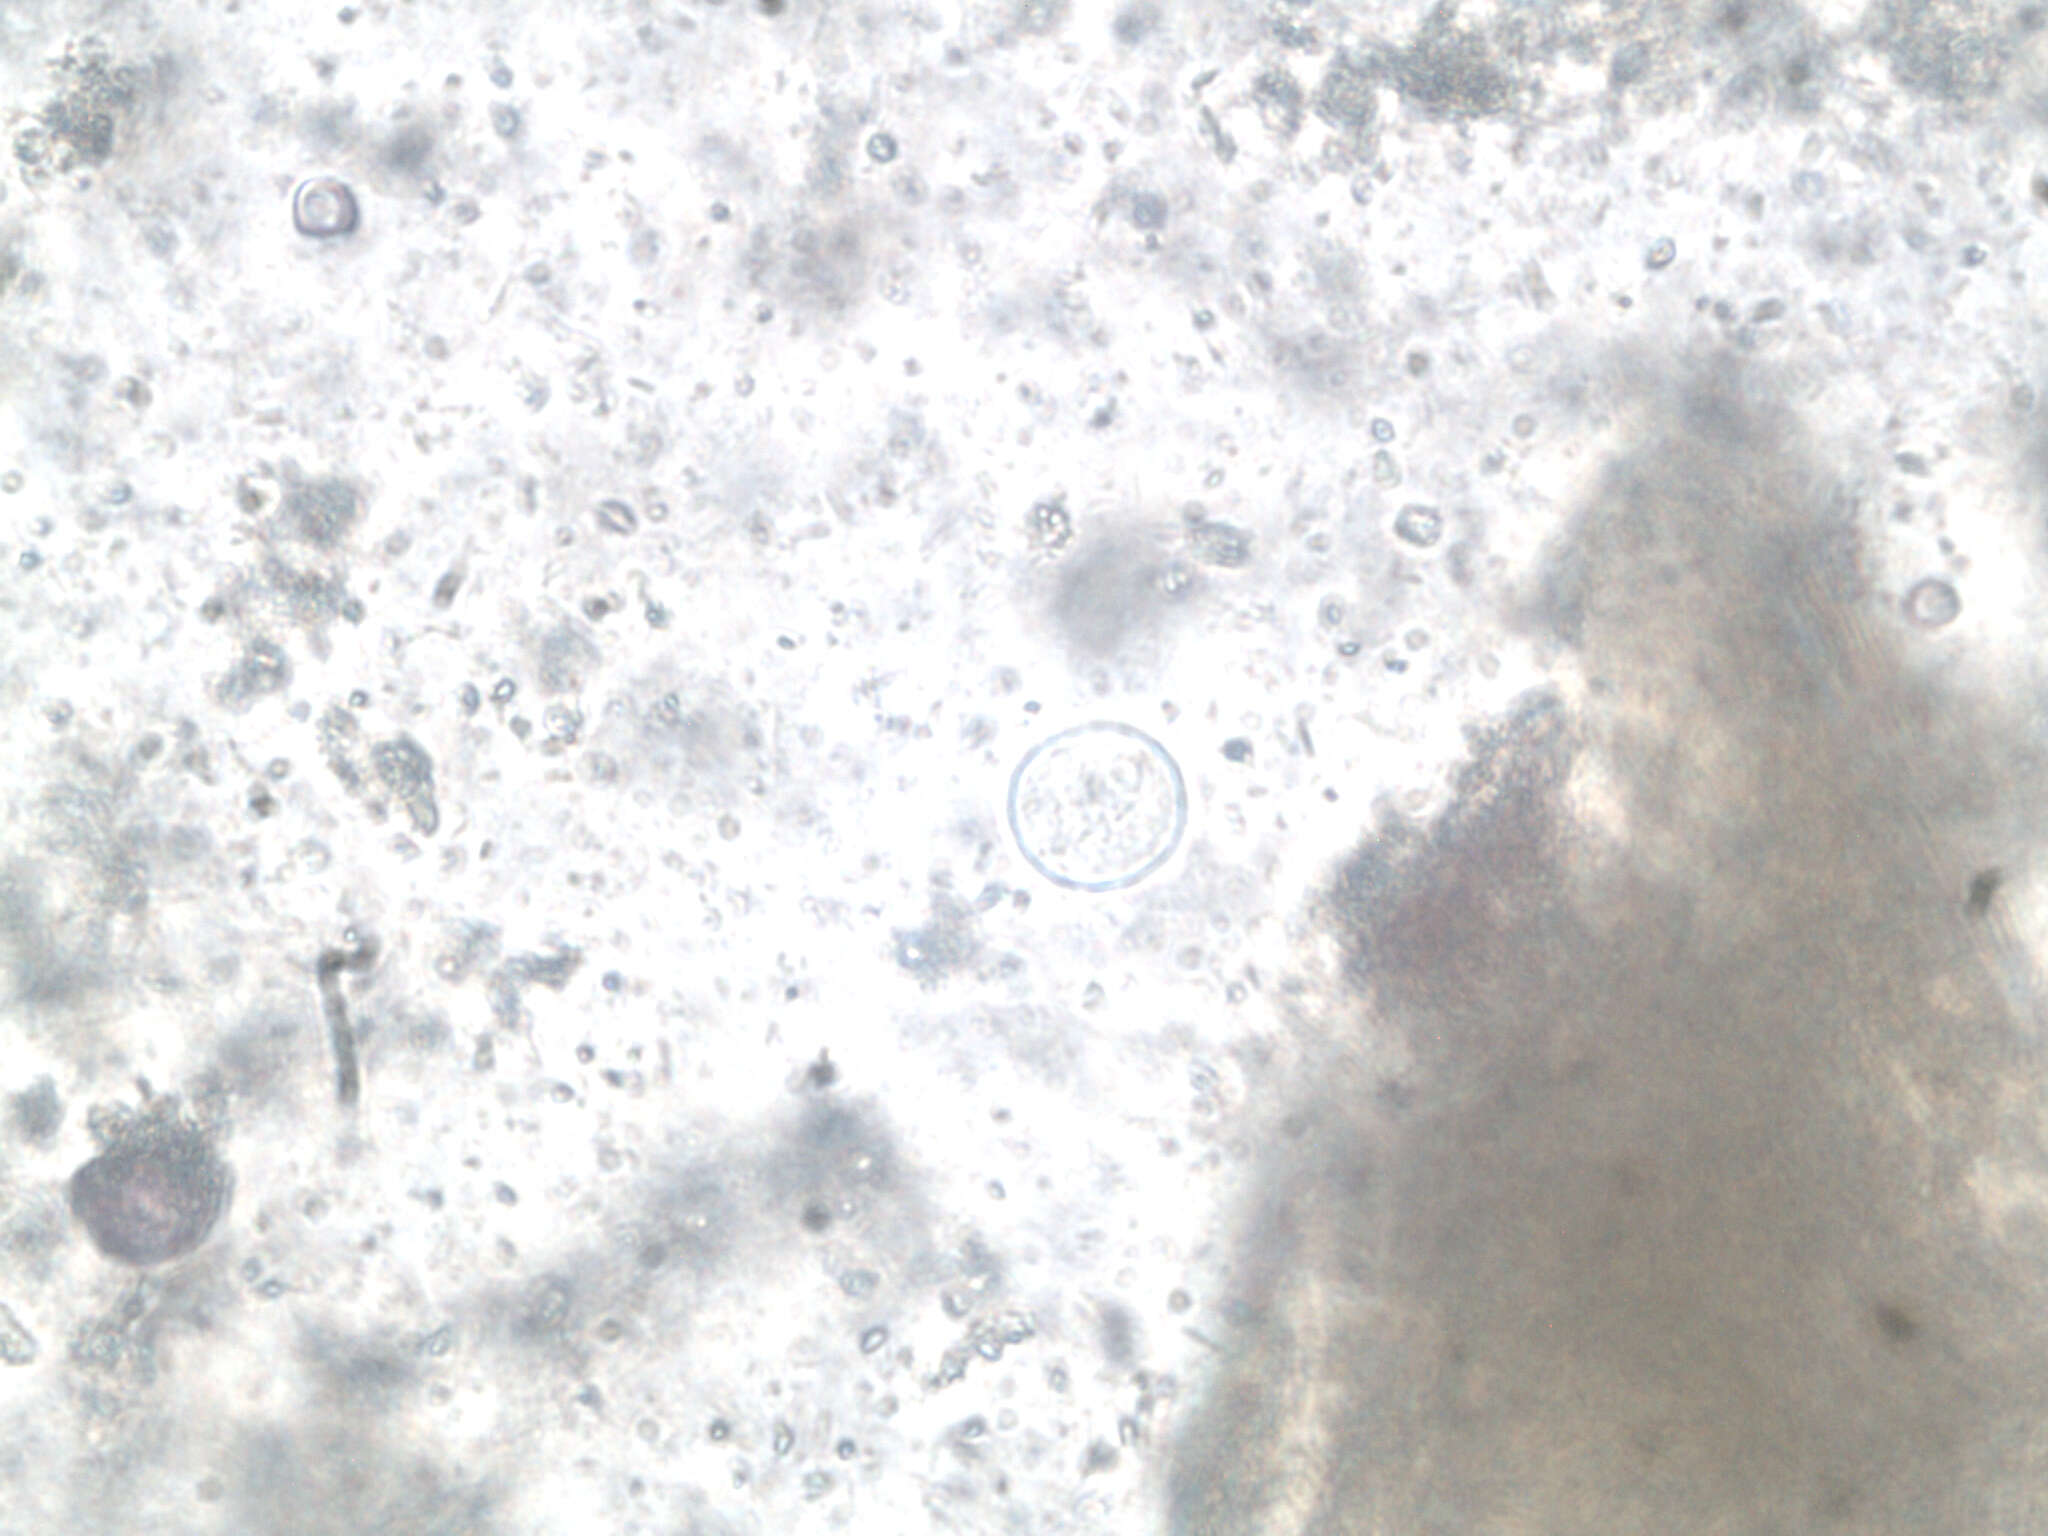 Image of Entamoeba coli